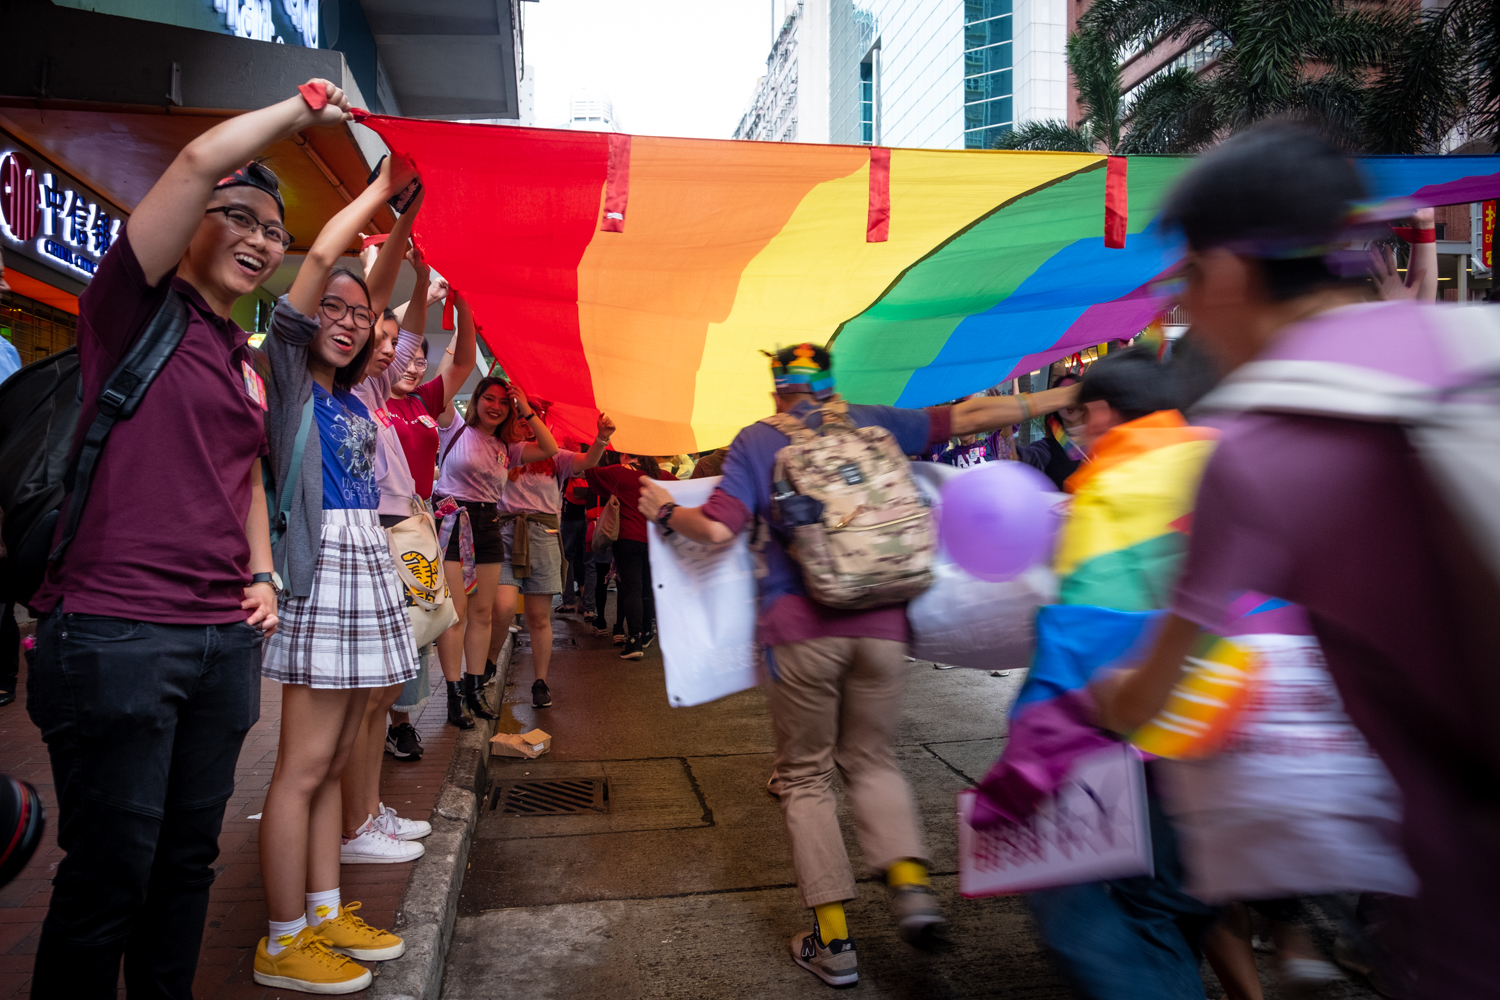 香港同志遊行 2018